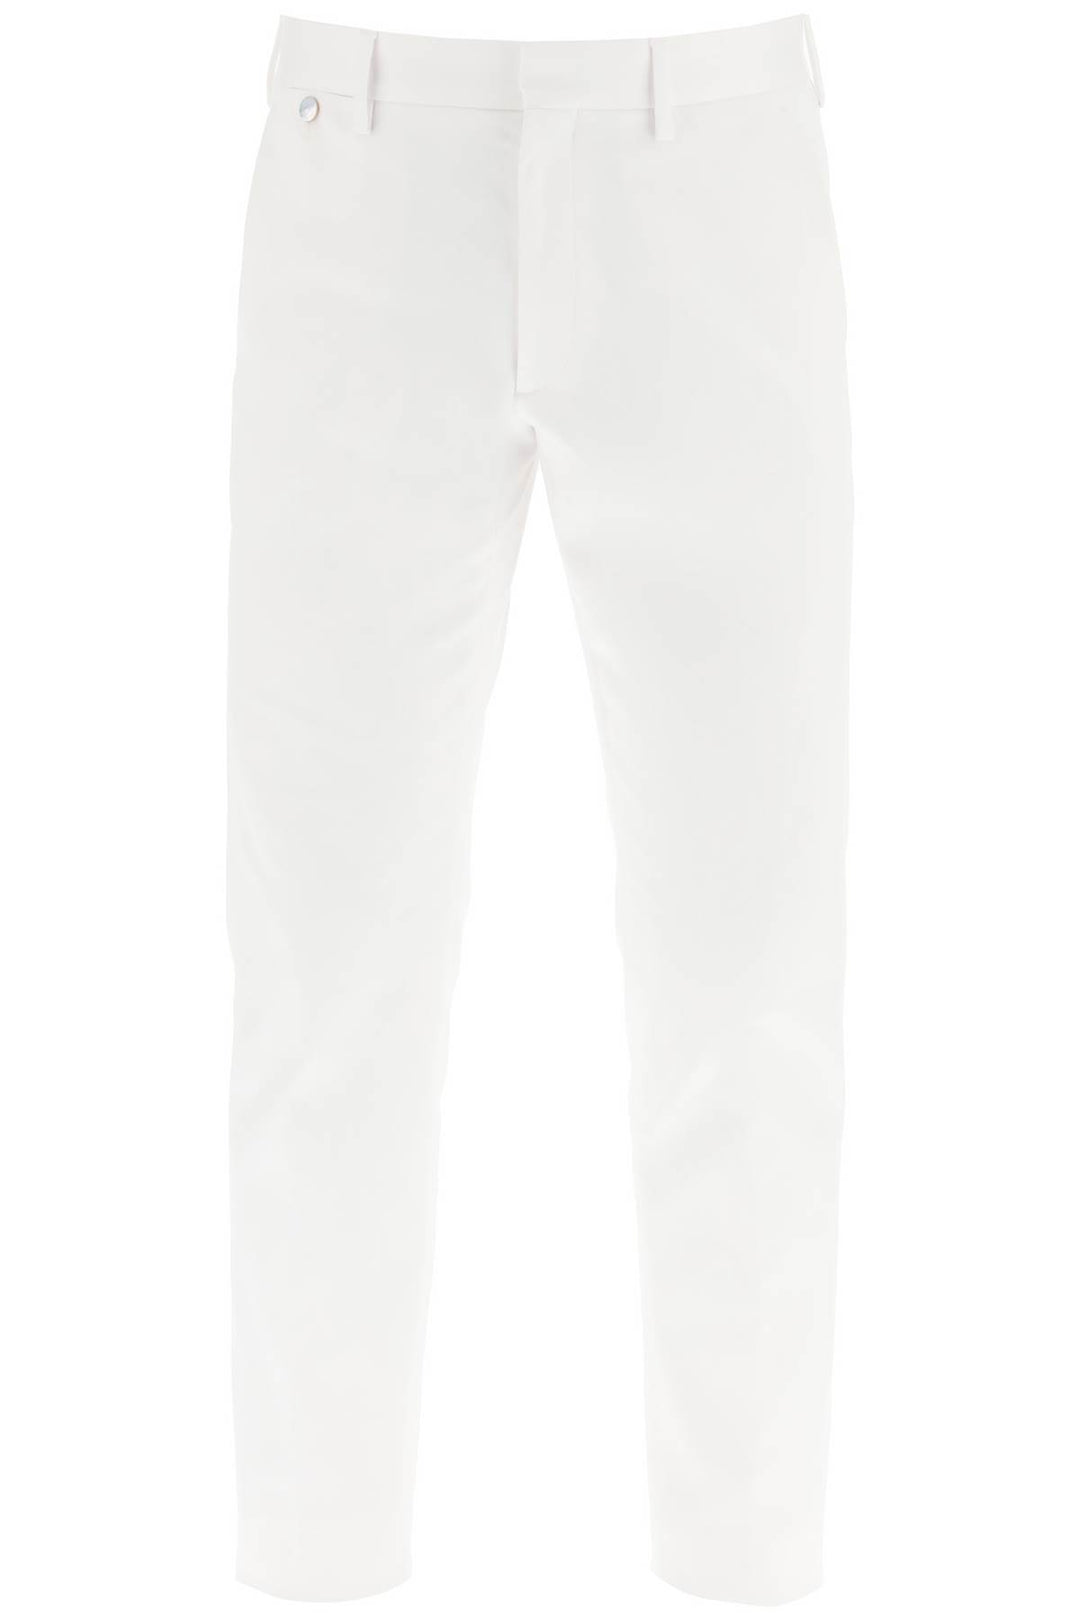 Agnona Cotton Chino Pants   Bianco